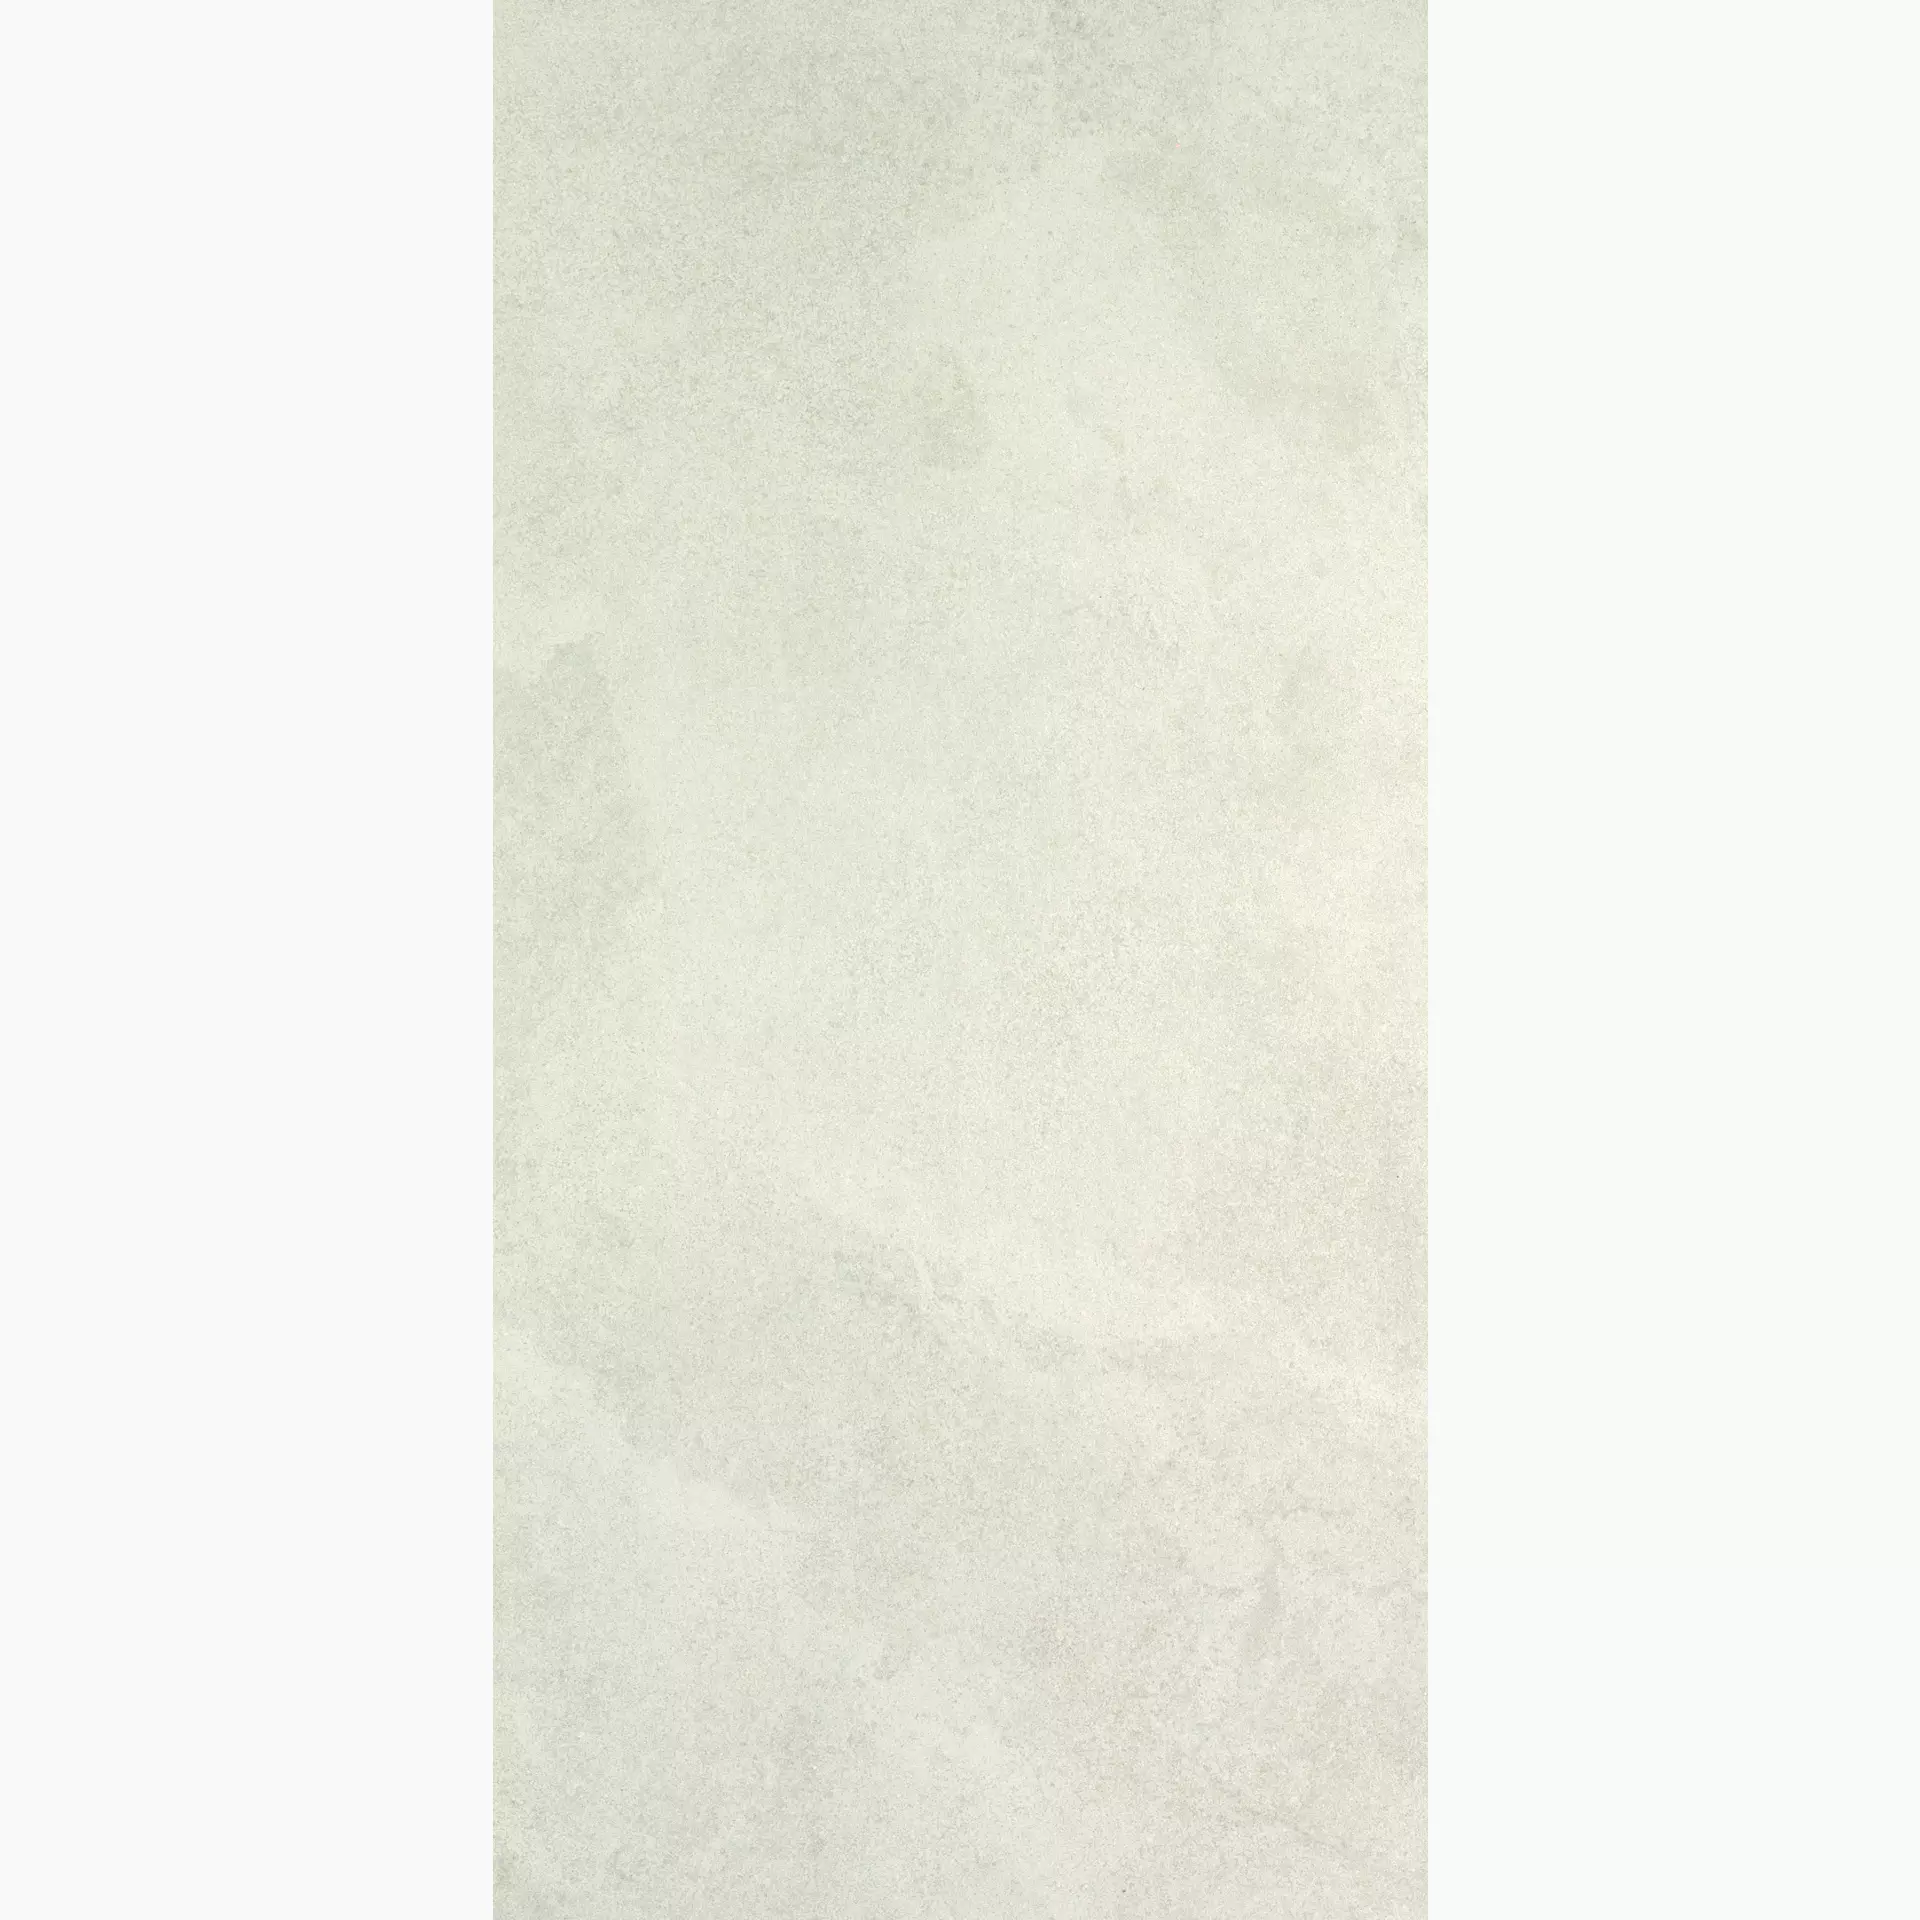 Ergon Stone Project White Lappato Controfalda E6KV 60x120cm rectified 9,5mm